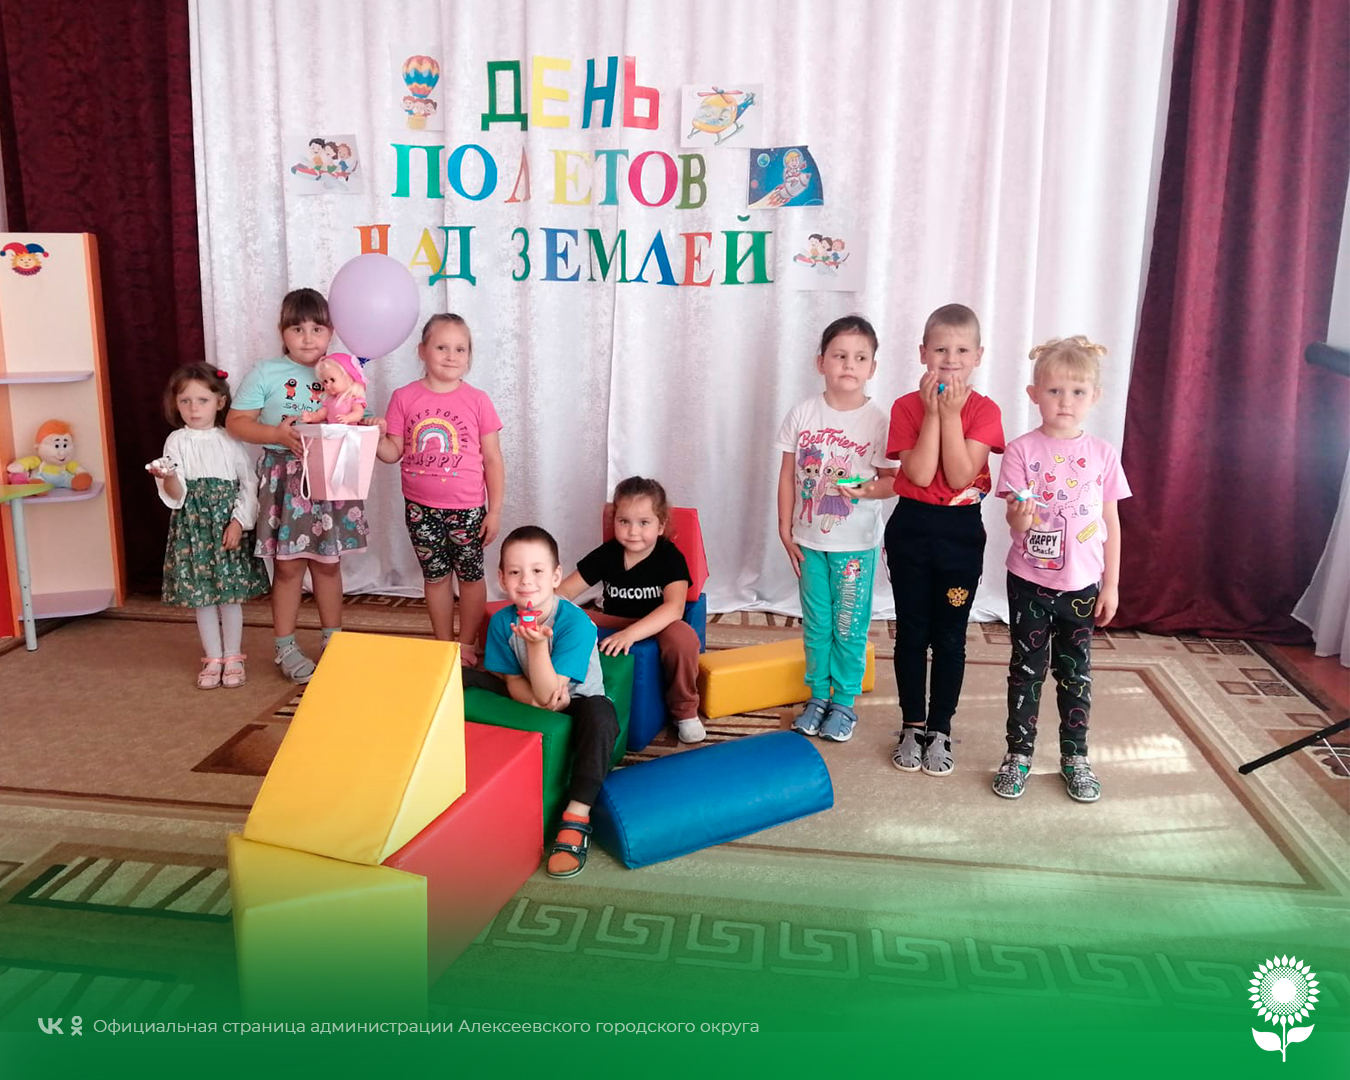 В детских садах Алексеевского городского округа прошло тематическое мероприятие, посвященное полётам над Землёй.